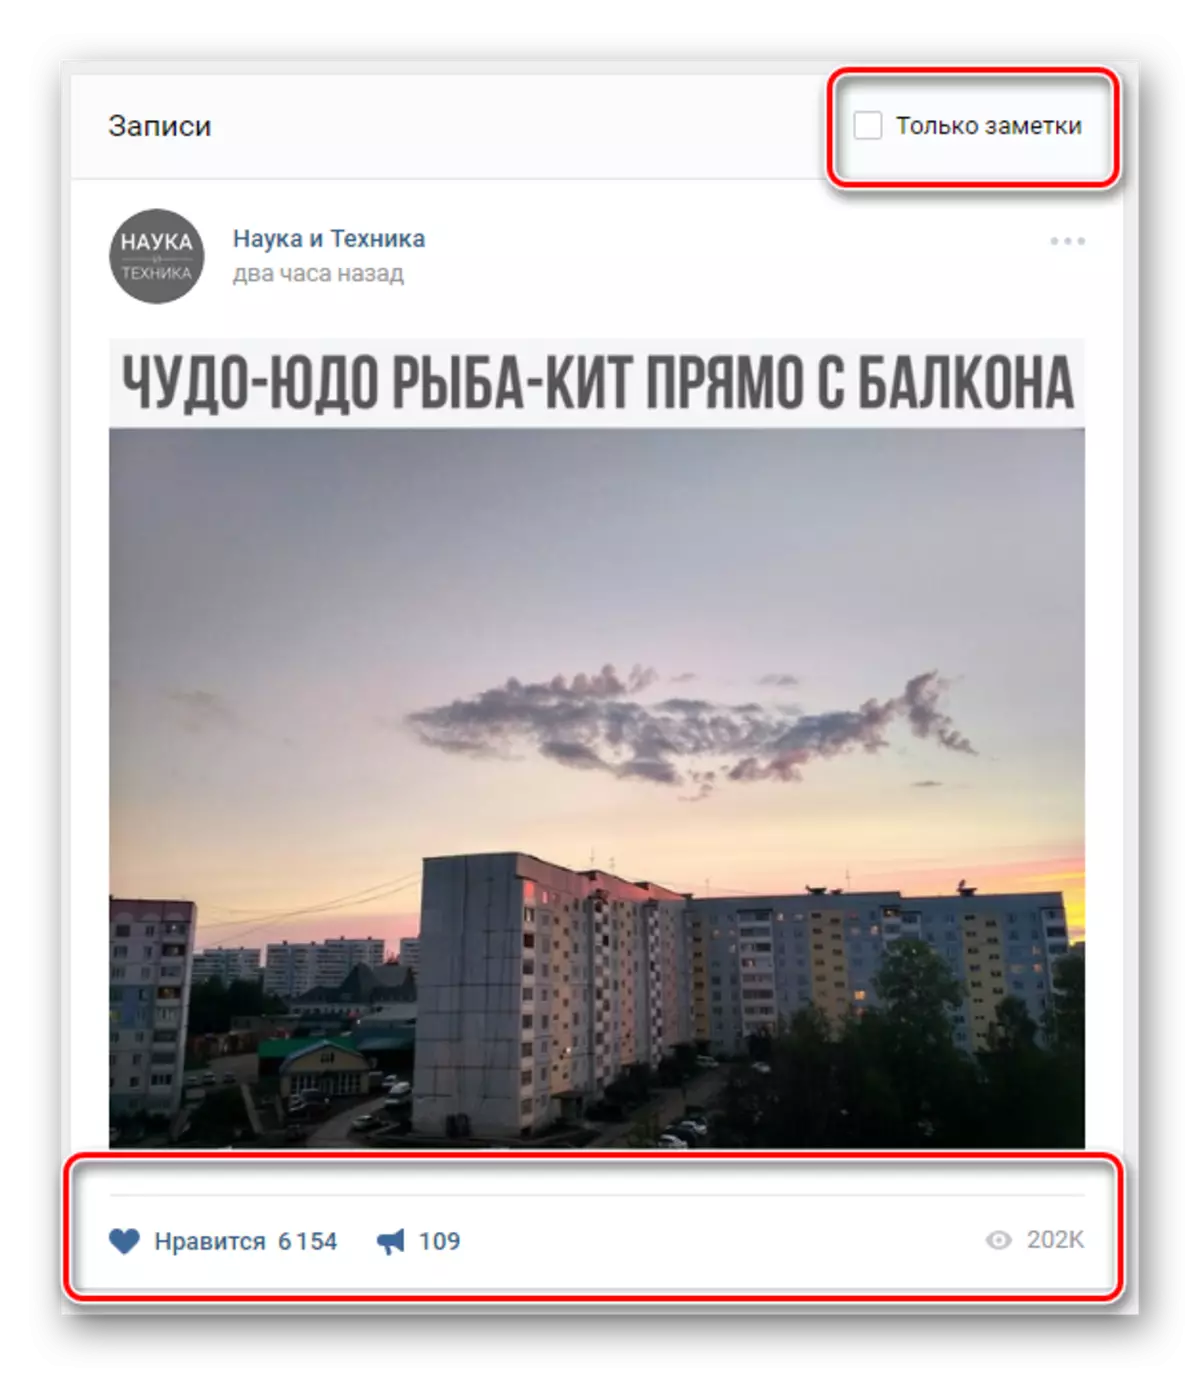 VKontakte кыстыргычларында ерак керү өчен эзләү